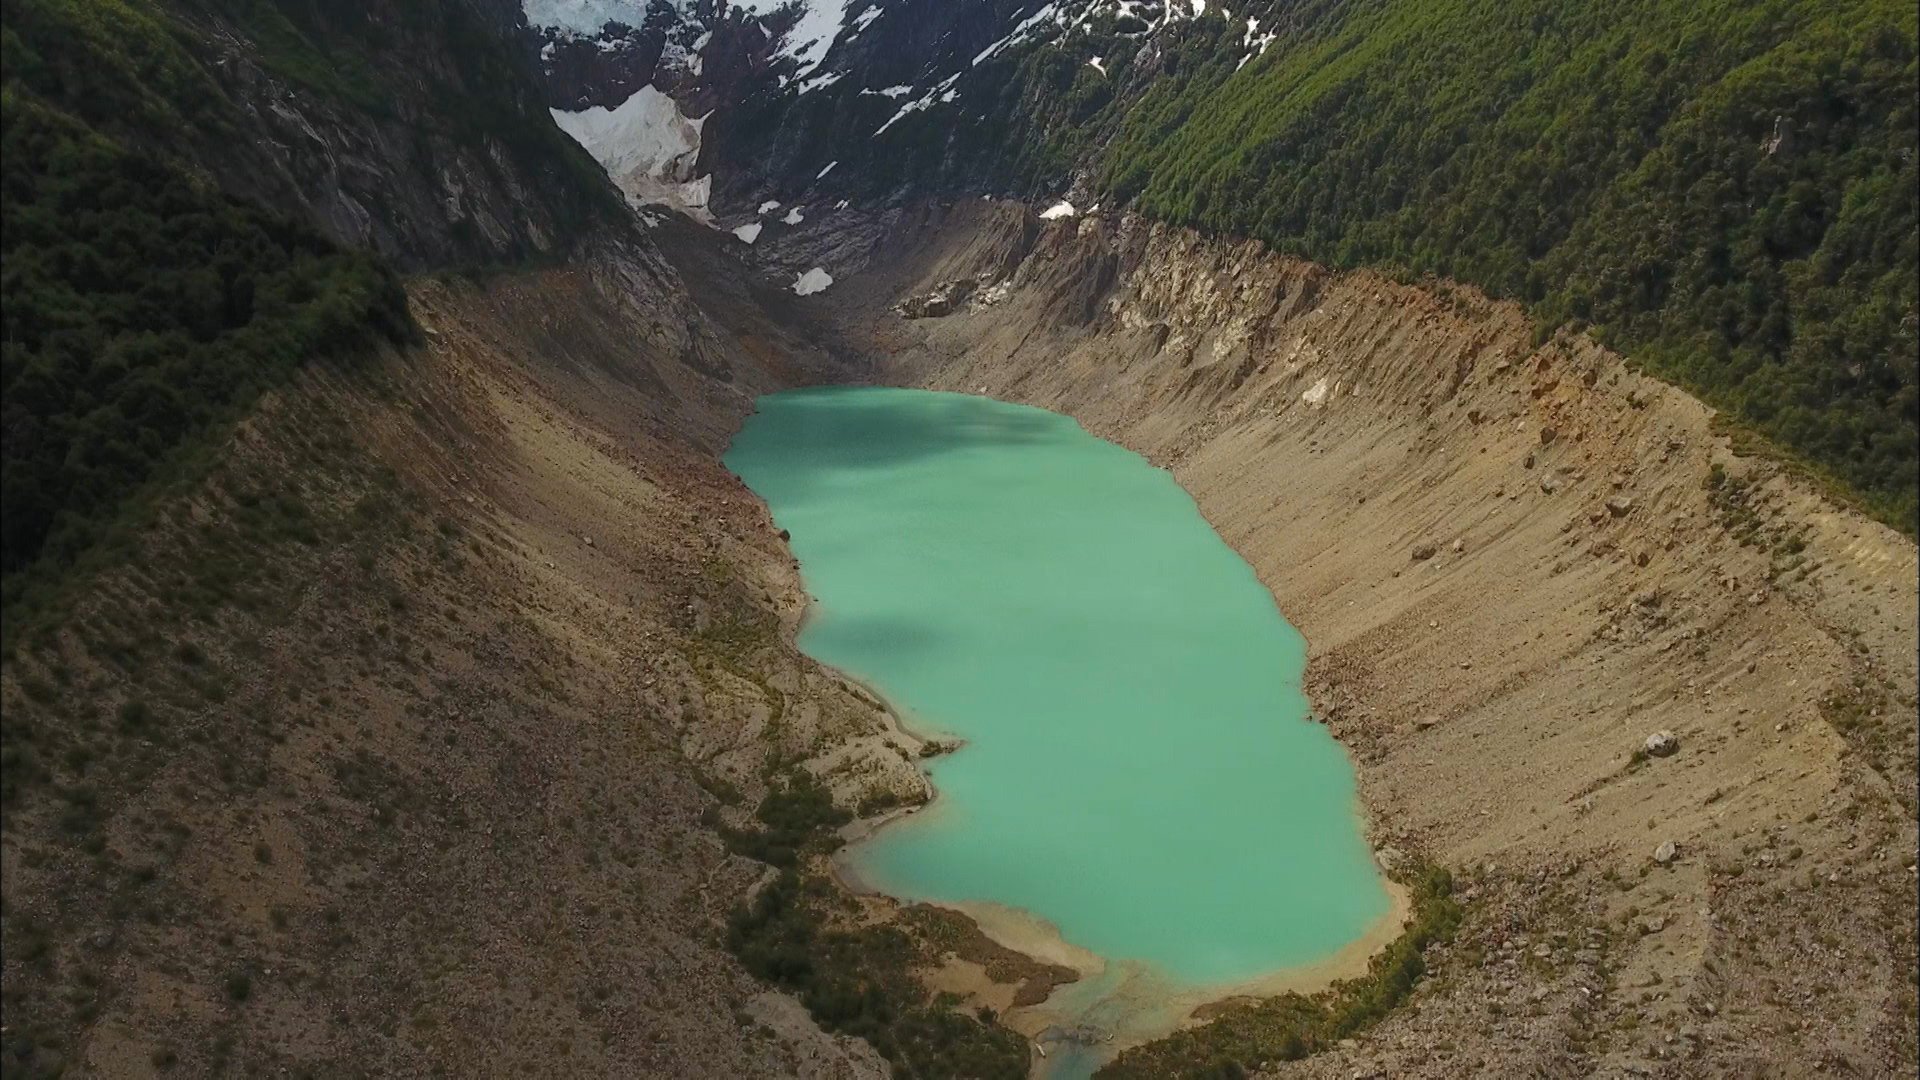 Twitter 上的 世界遺産 南米アンデス山脈 天空の谷に不思議な湖がありました 水が エメラルド色 なのです なぜこんな色になったのでしょう 秘密を説くカギは湖のすぐ上 氷河にありました パタゴニアの大自然 ロス アレルセス国立公園 9日午後6時放送です